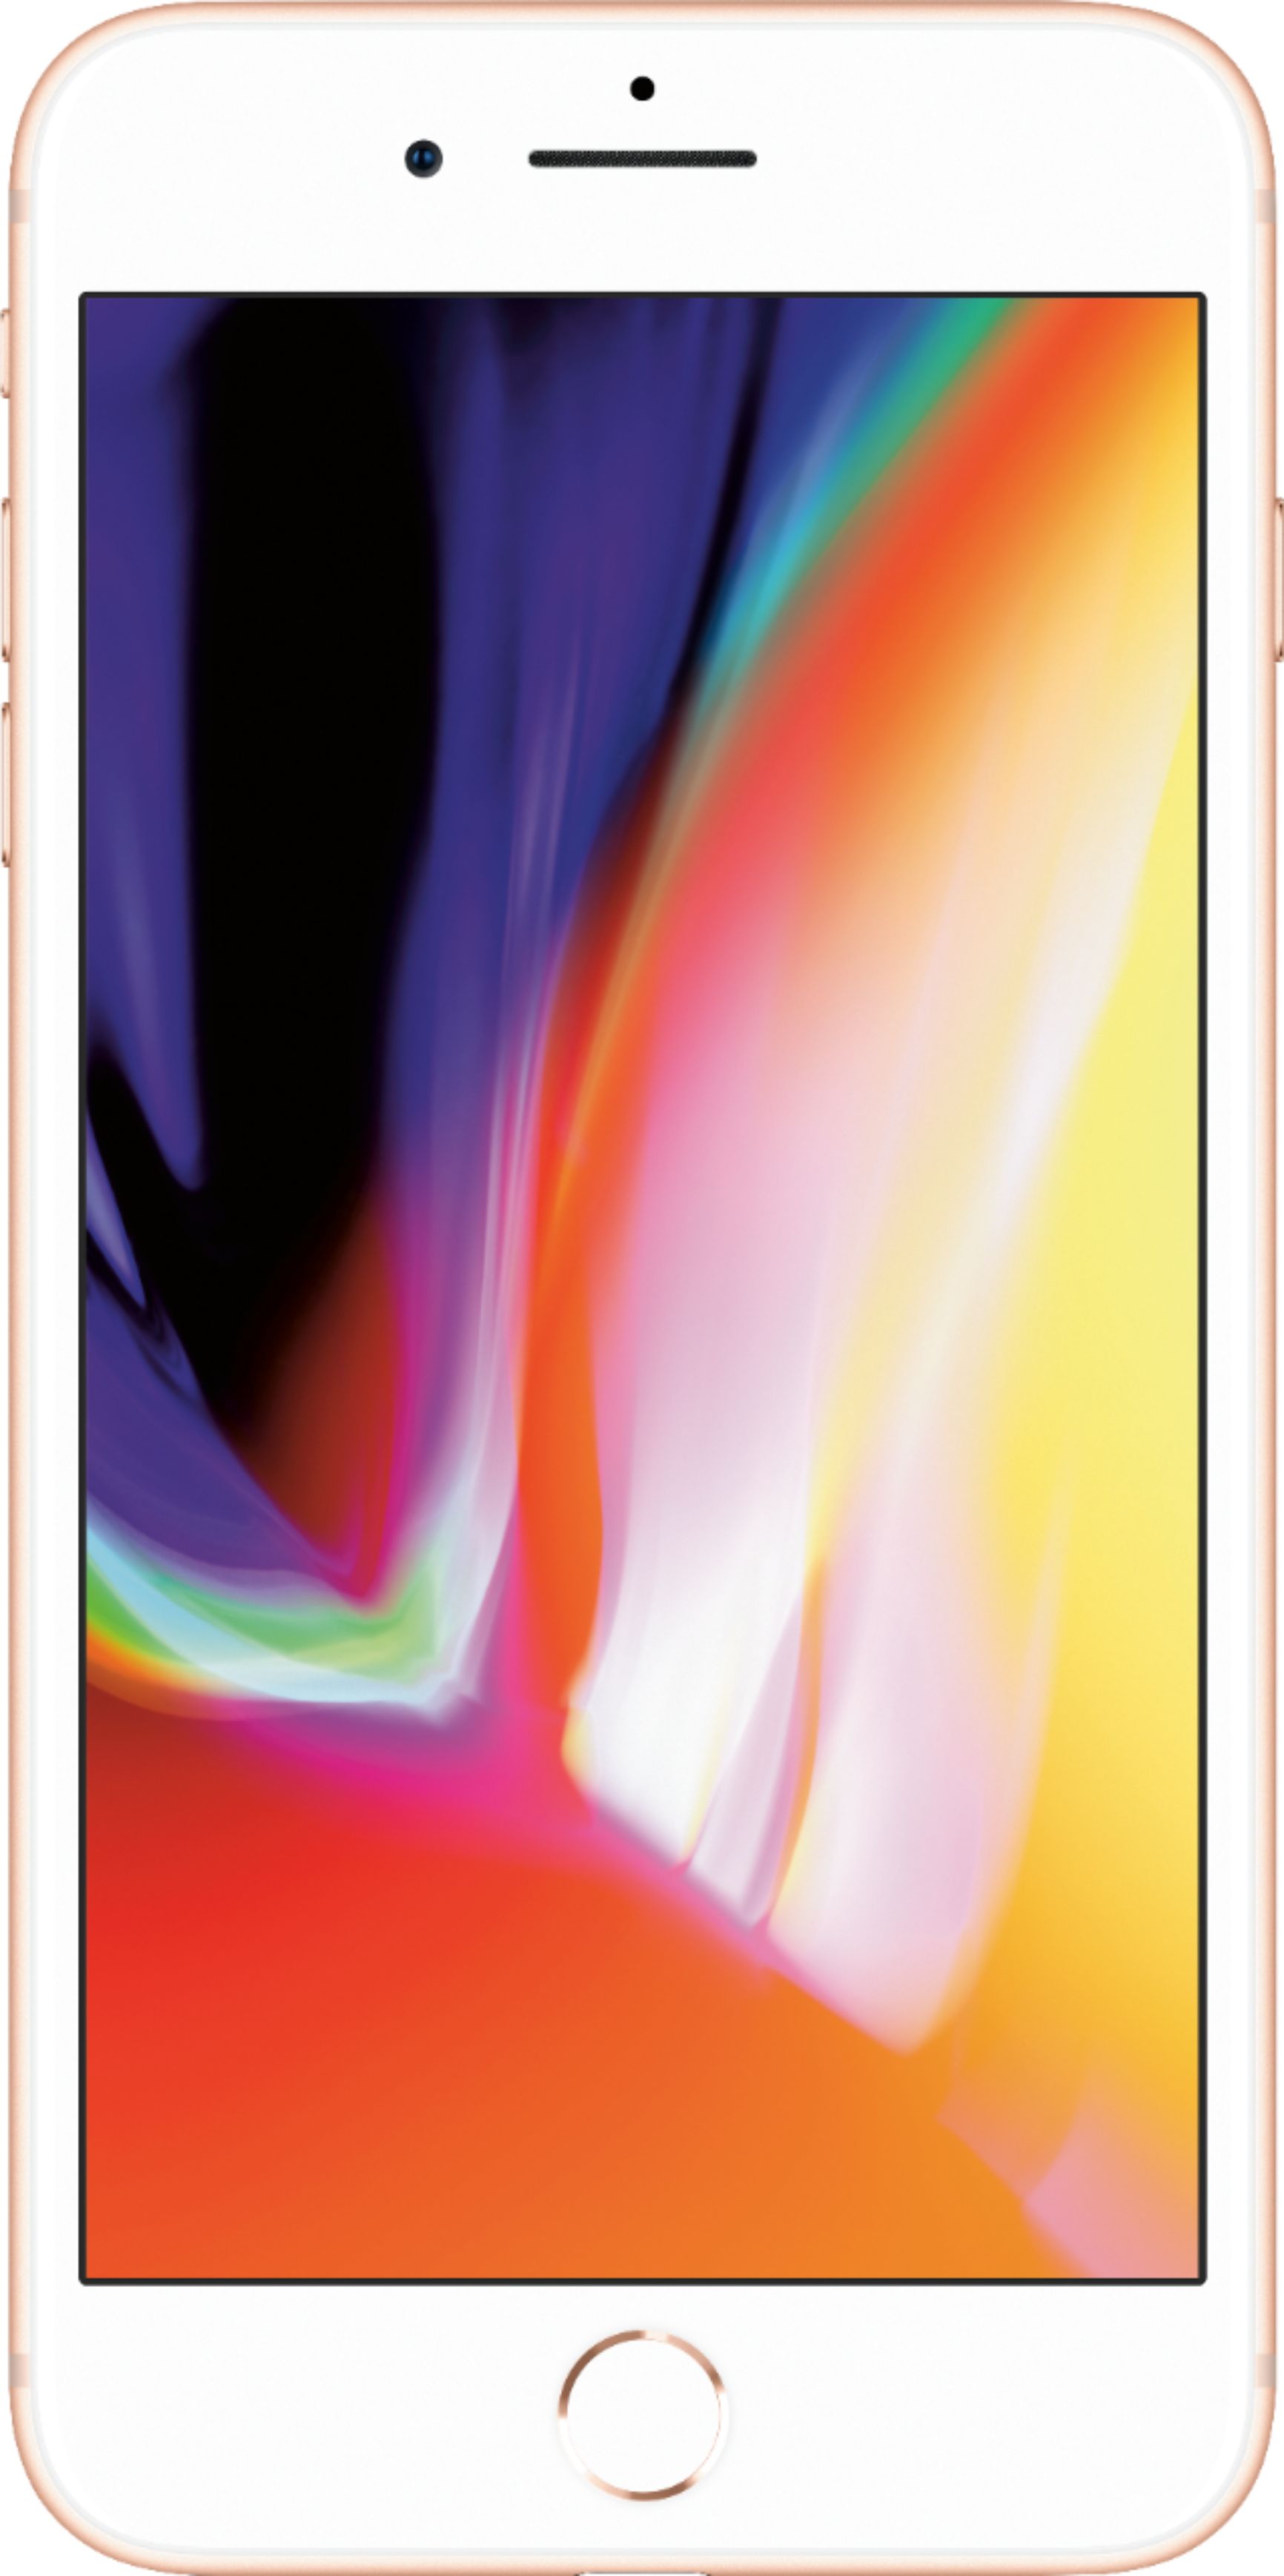 Best Buy: Apple iPhone 8 Plus 256GB Gold (Verizon) MQ8J2LL/A